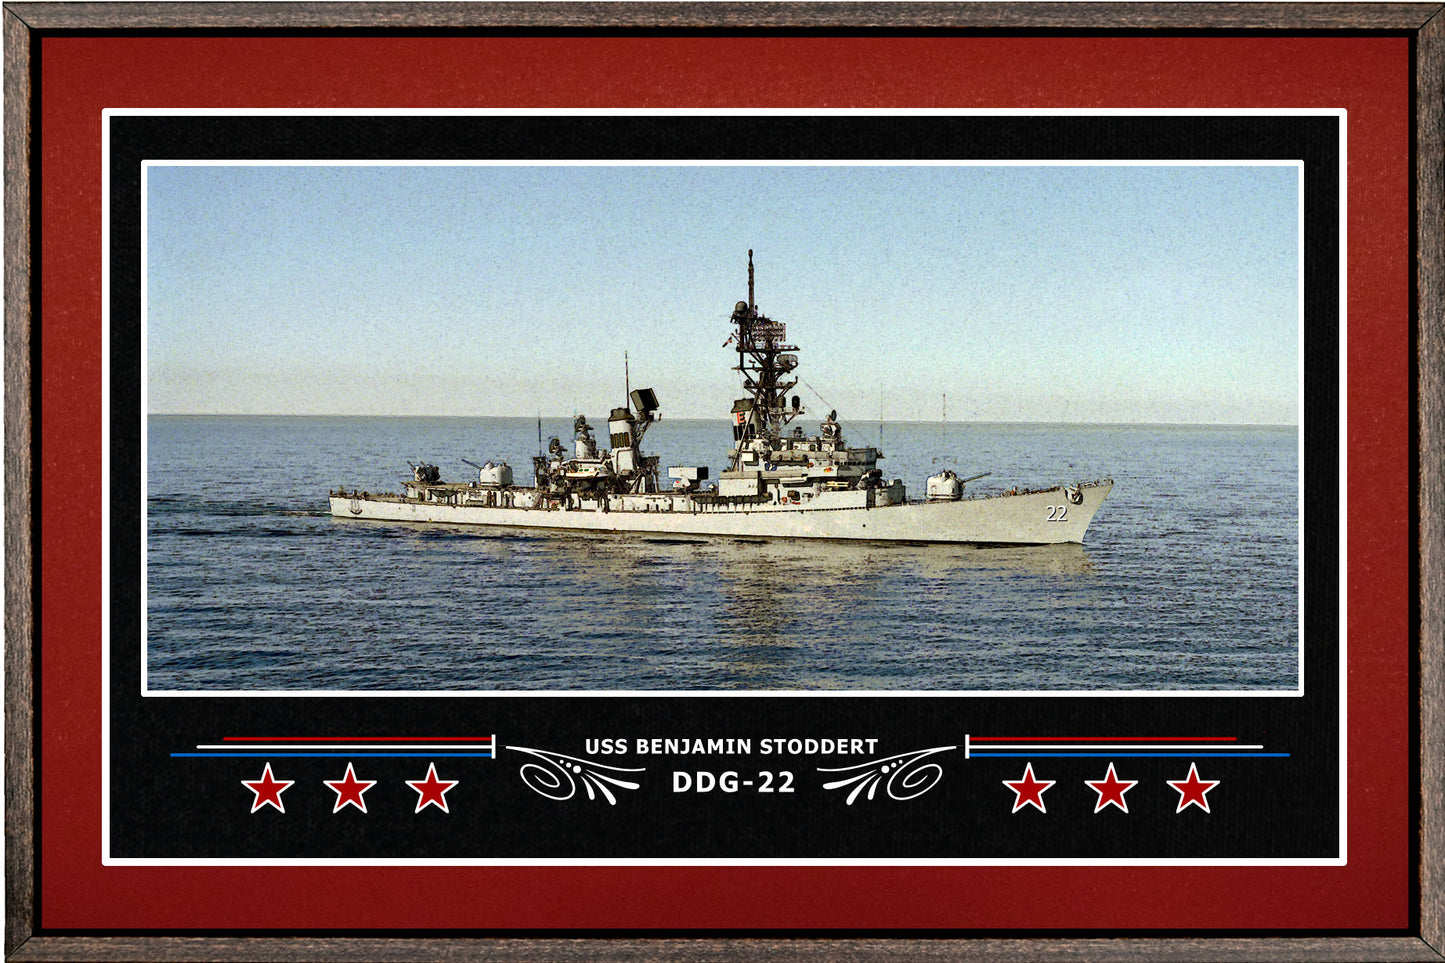 USS BENJAMIN STODDERT DDG 22 BOX FRAMED CANVAS ART BURGUNDY